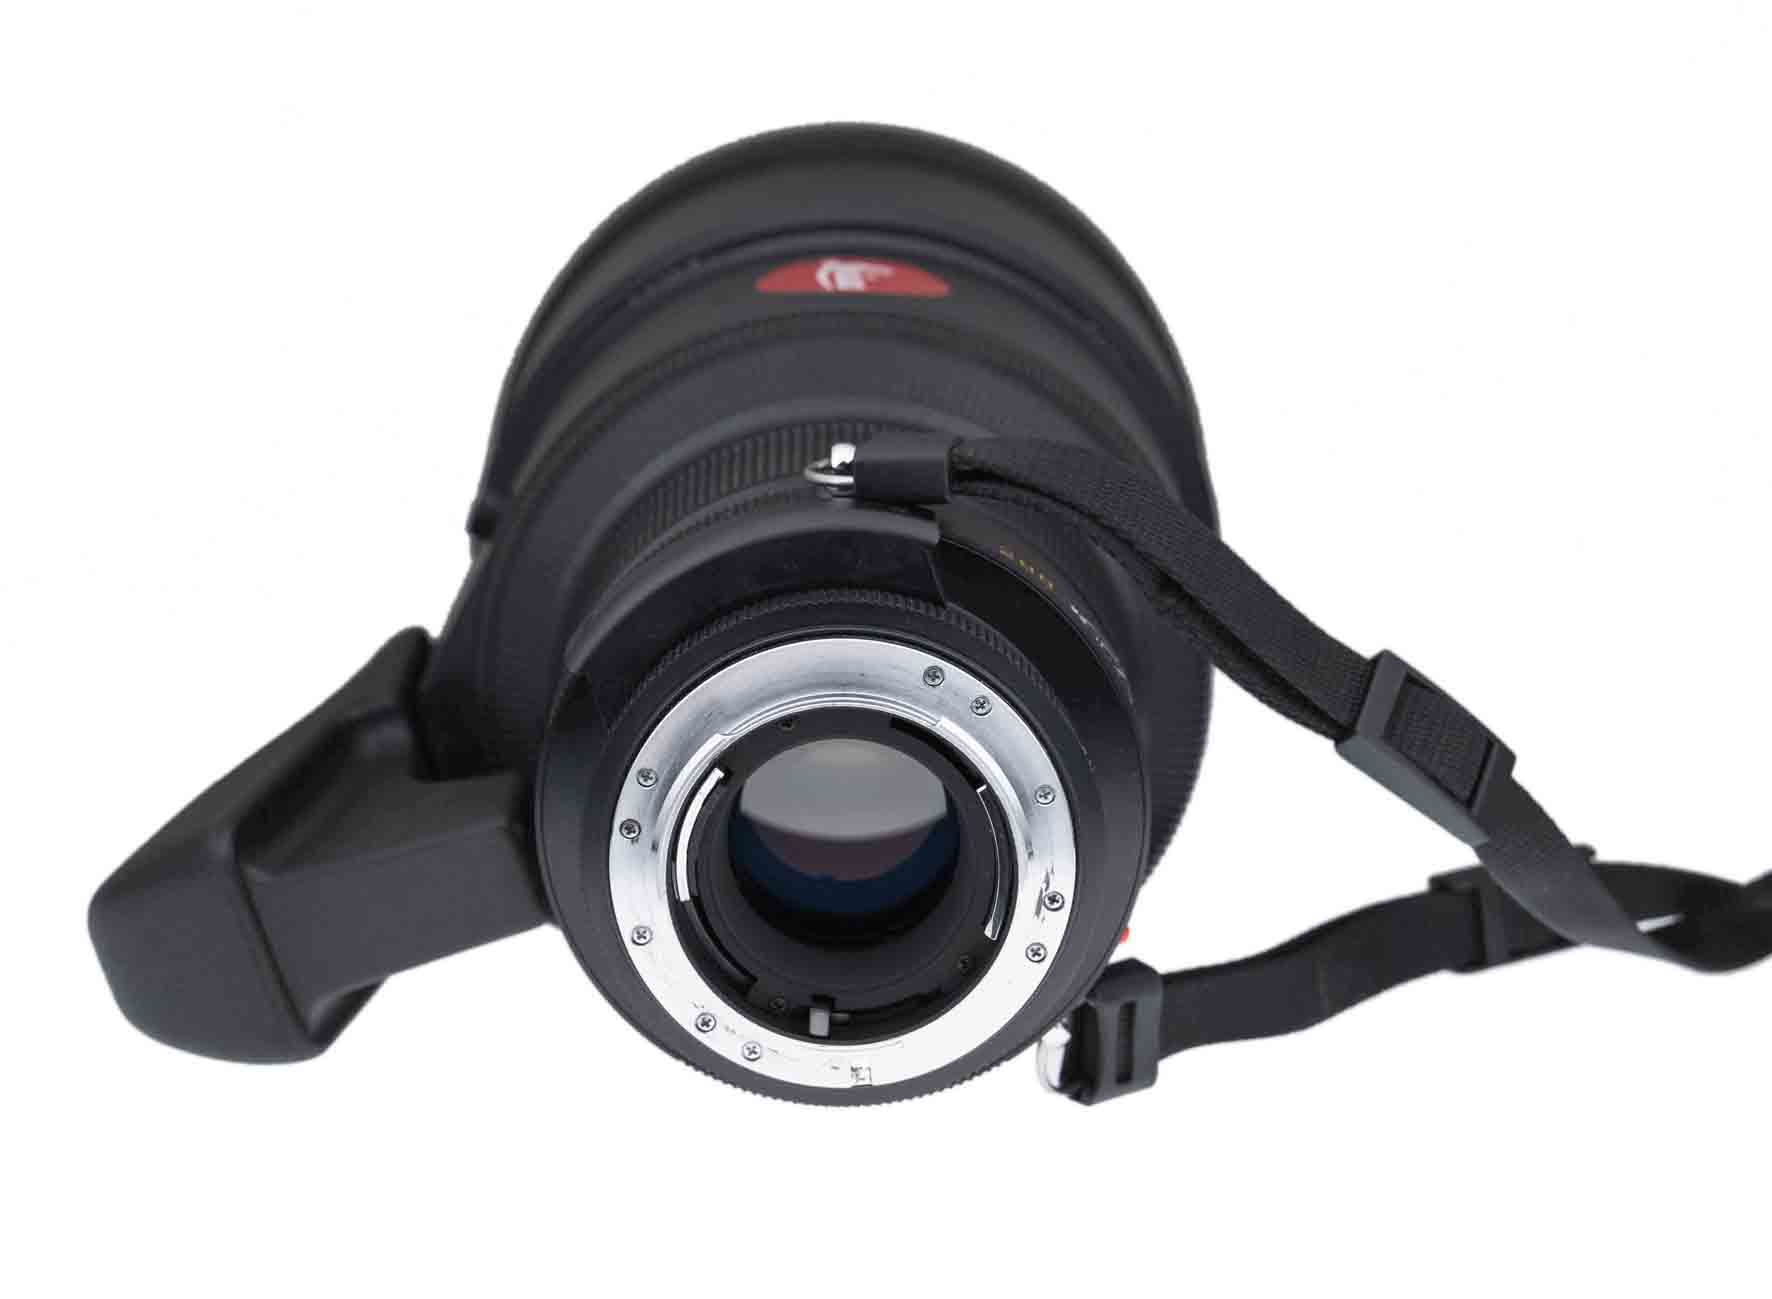  Leica Apo-Telyt-R 1:2,8/280mm